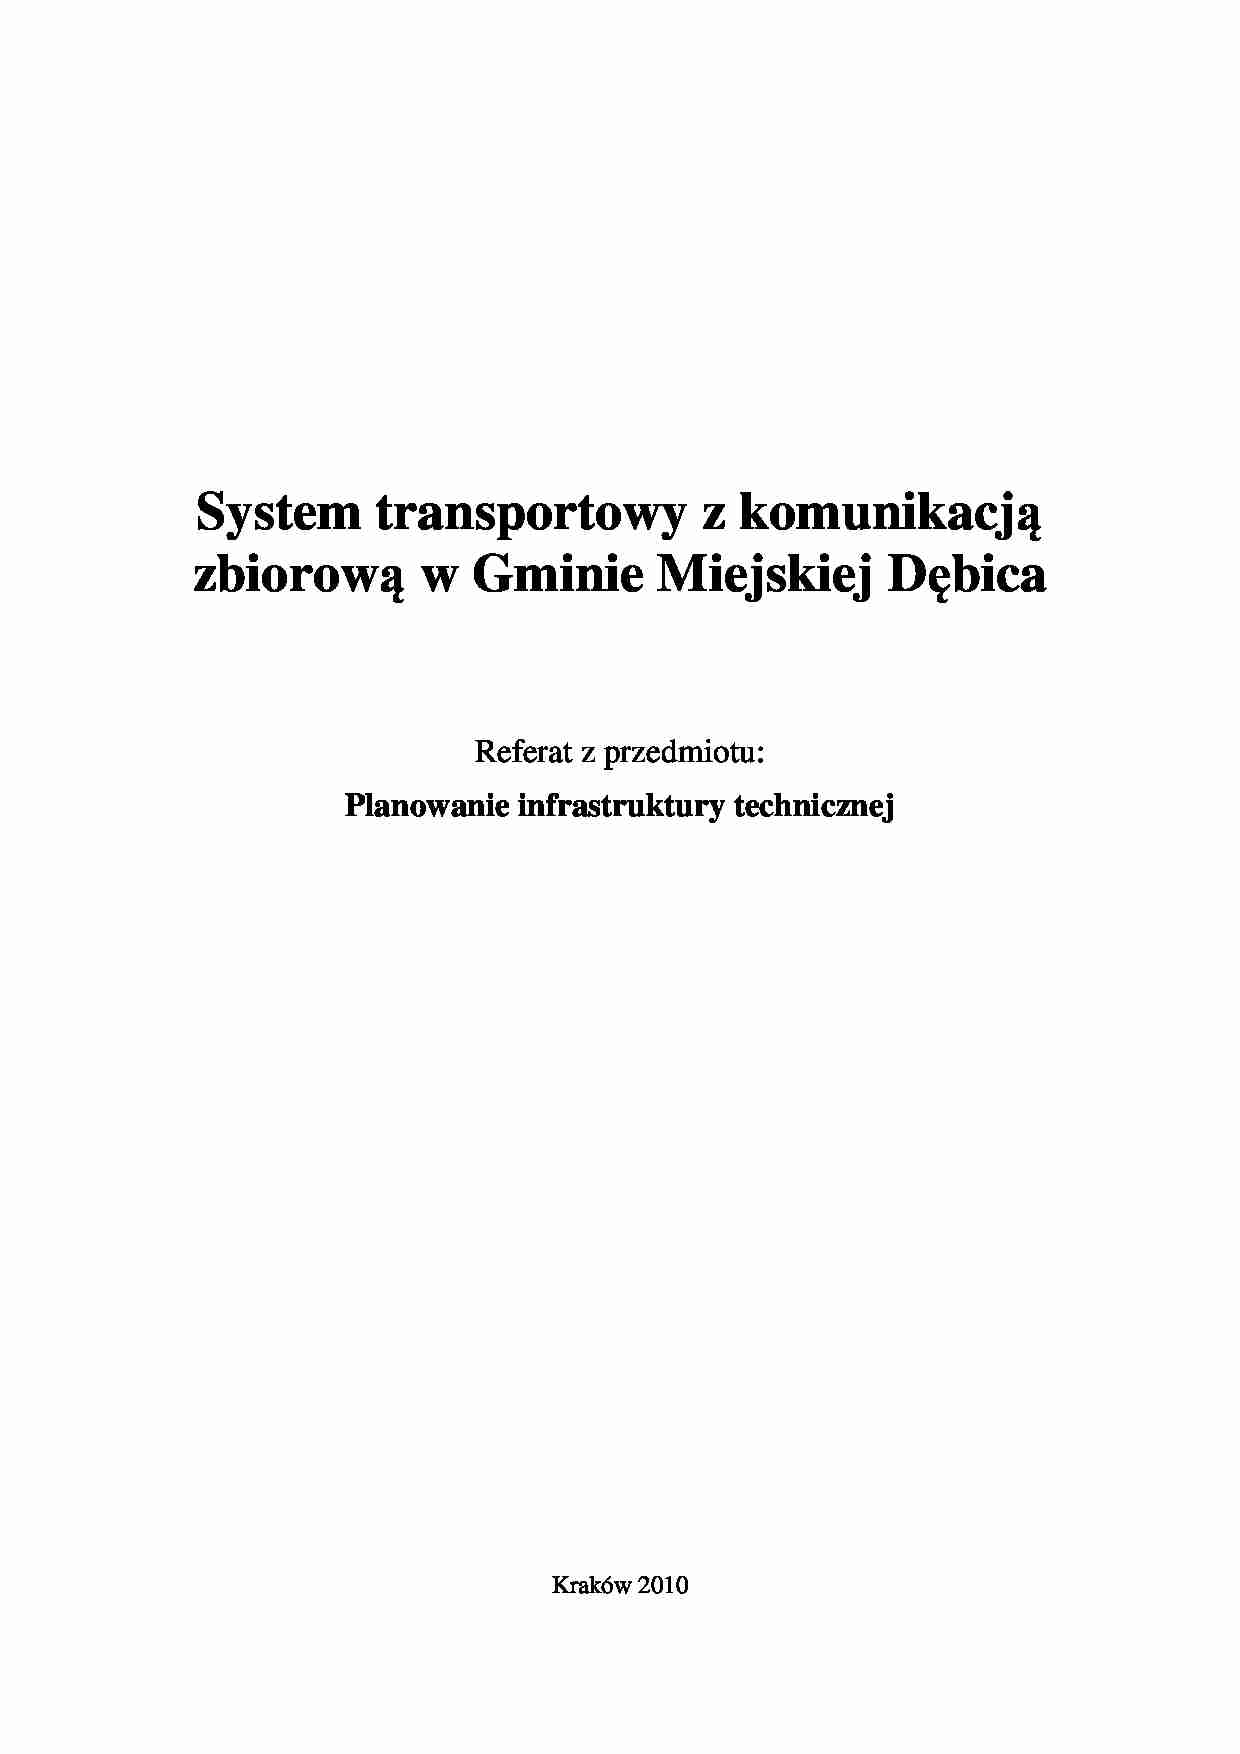 System transportowy z komunikacją zbiorową - praca zaliczeniowa - strona 1